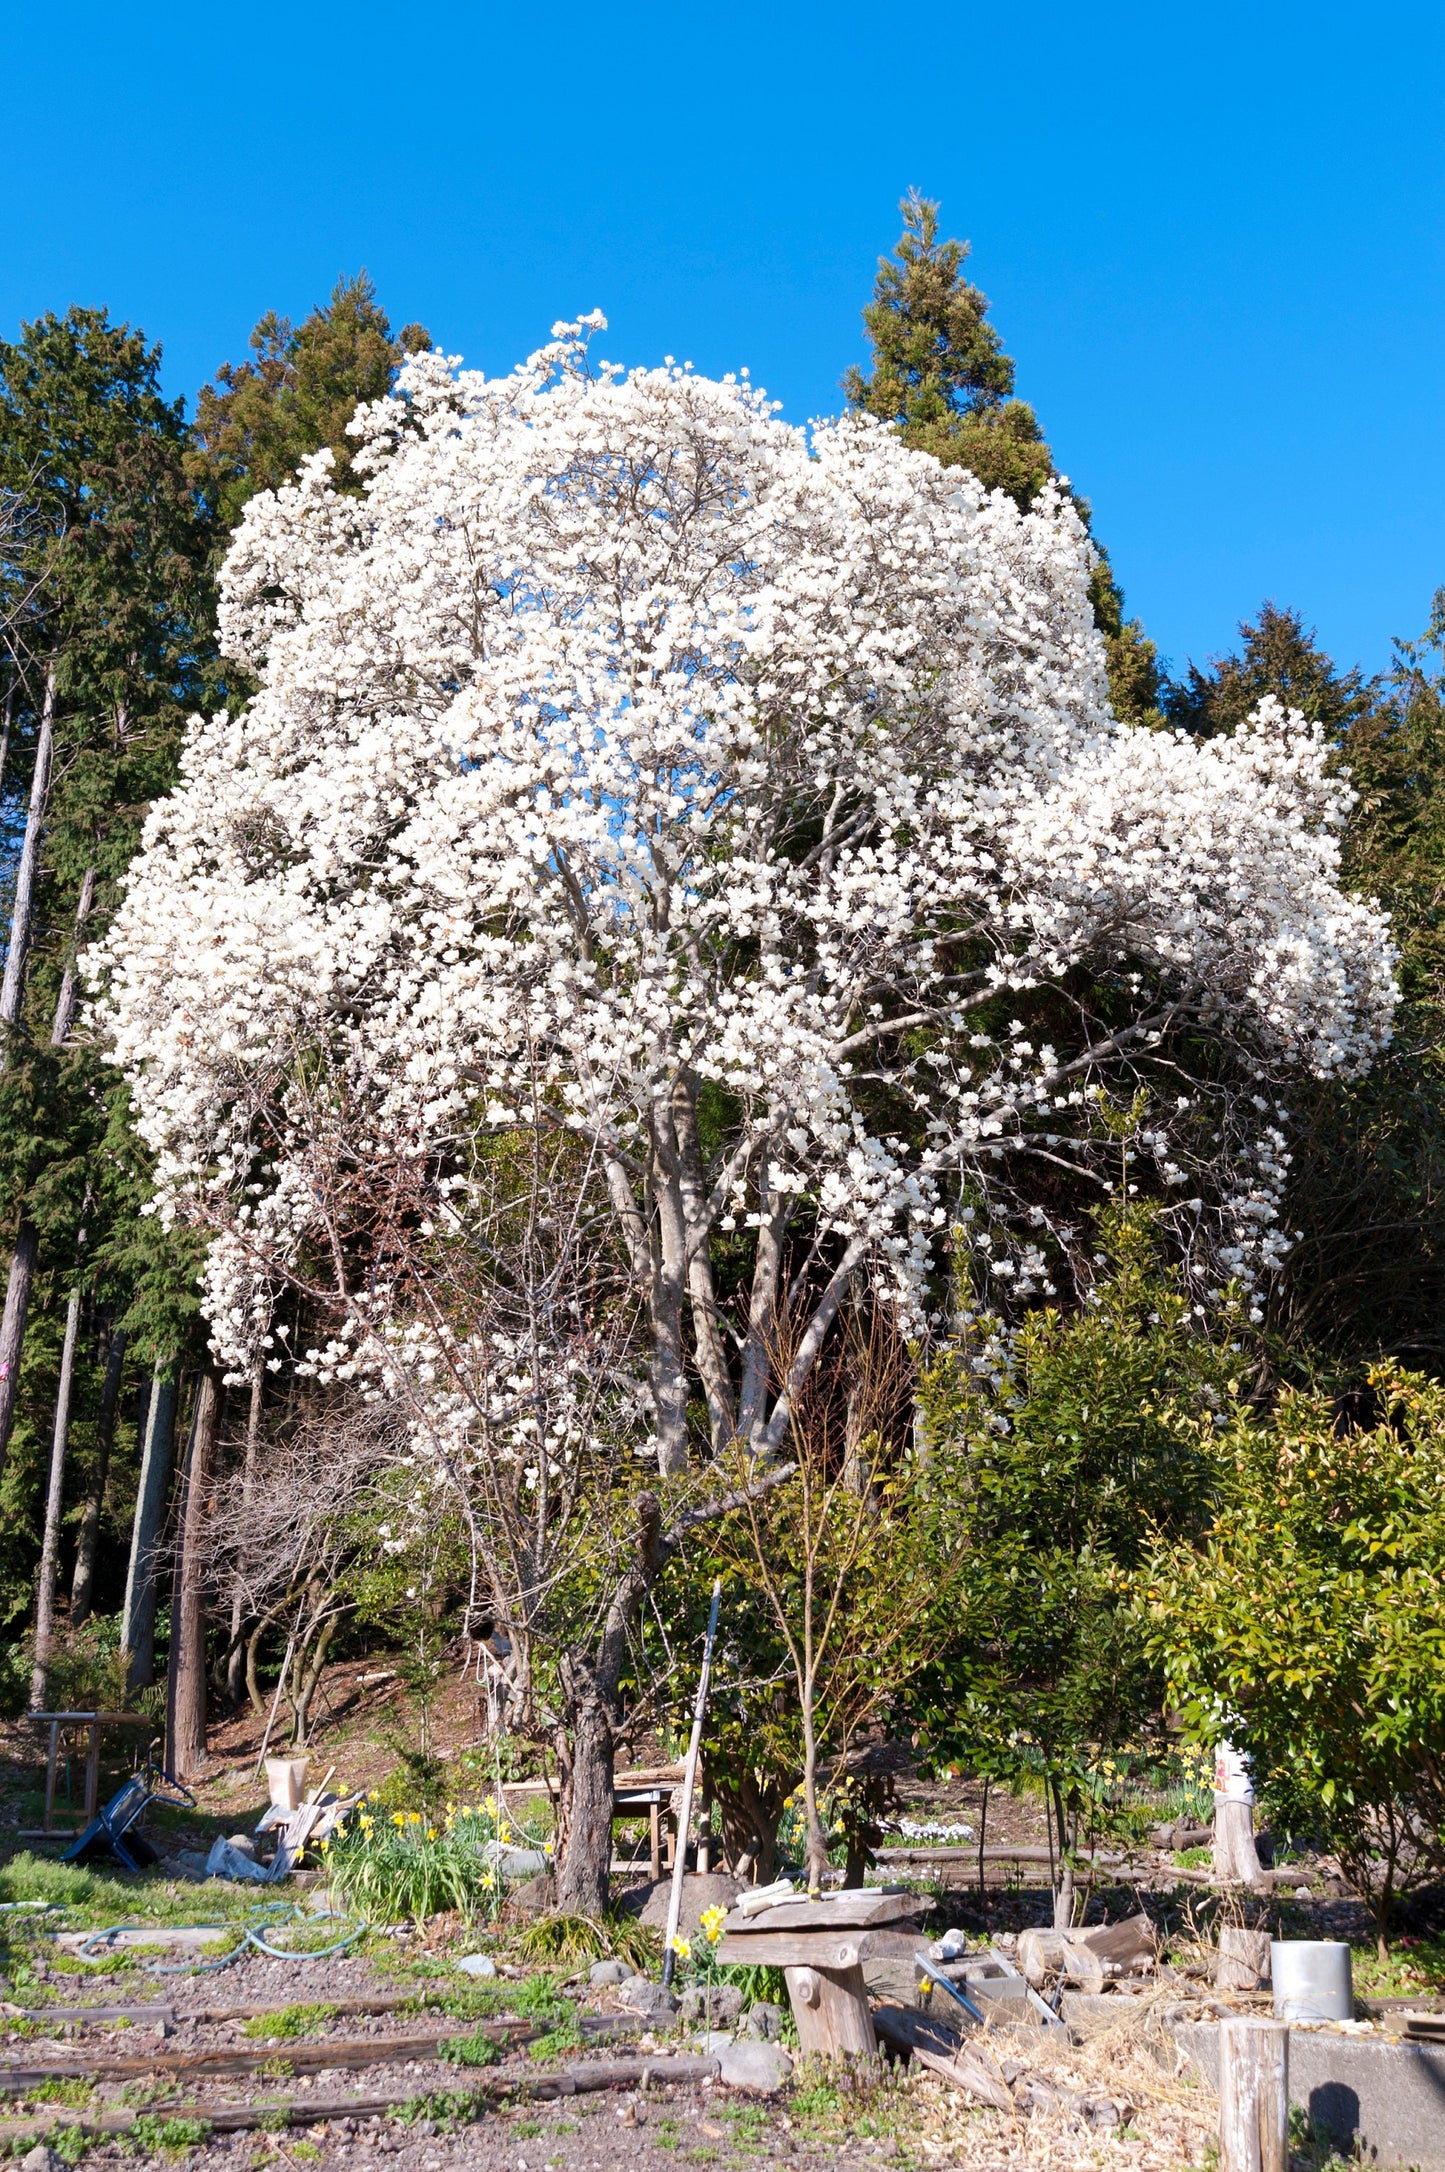 10 KOBUS MAGNOLIA TREE aka Japanese Magnolia or Kobushi - White Pink 4" Fragrant Flower Seeds